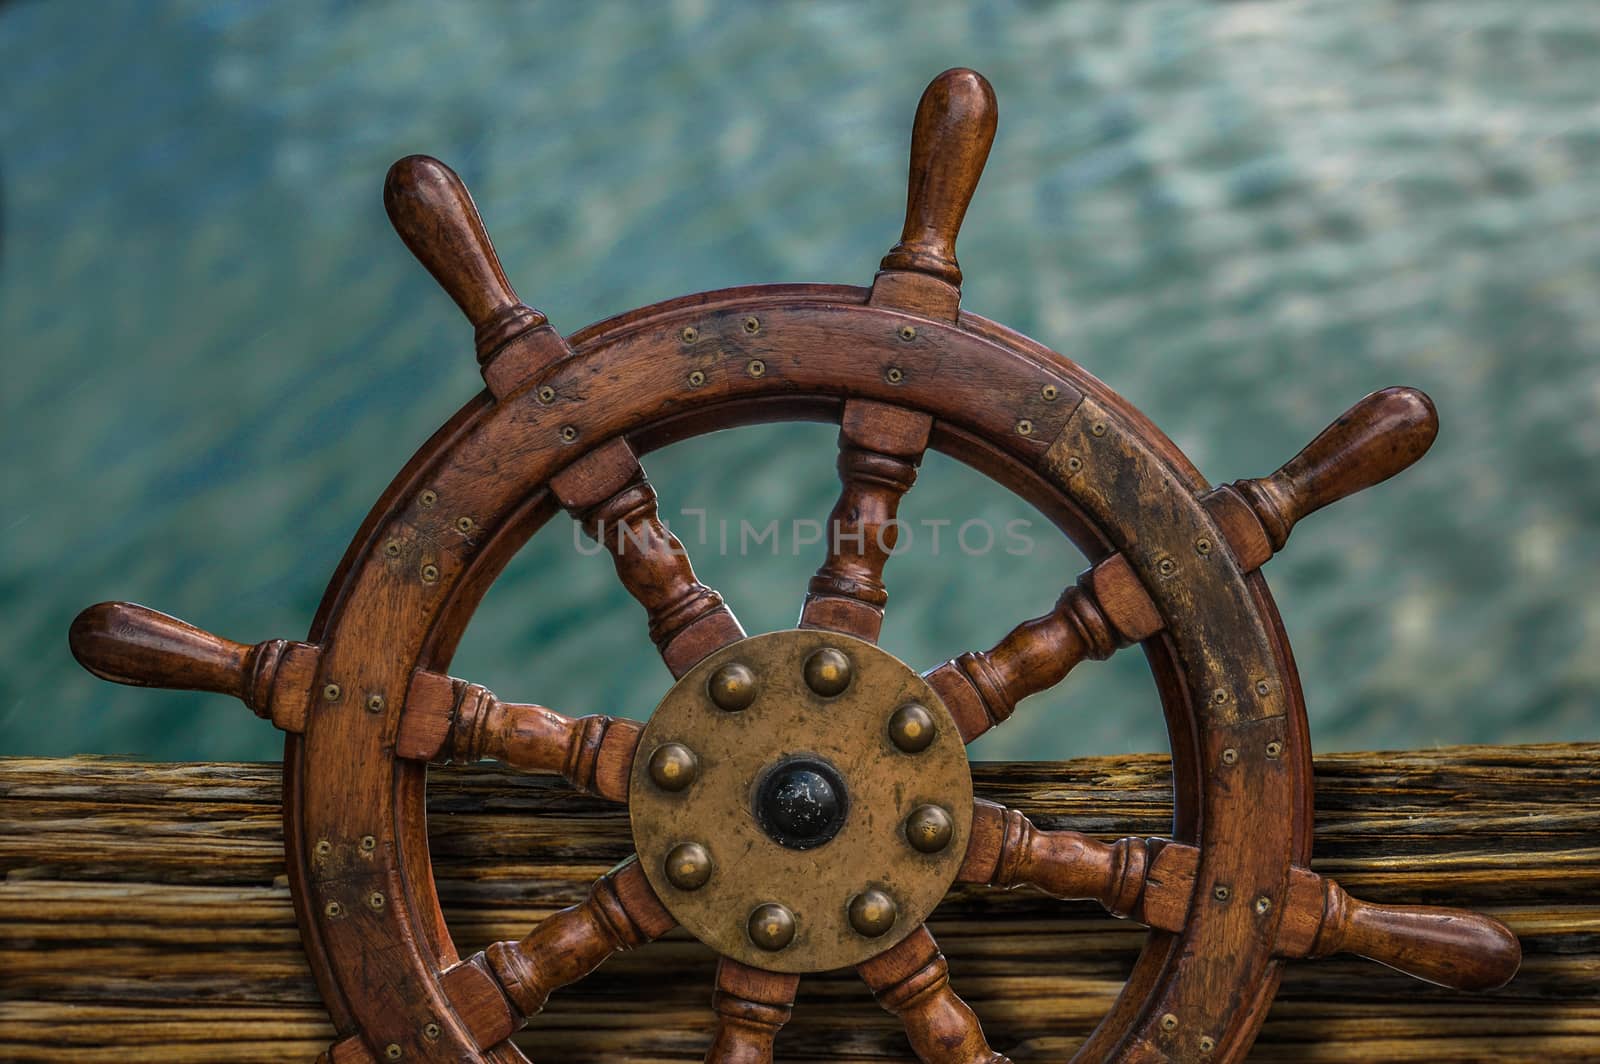 Ships Wheel Against Ocean Water by mrdoomits